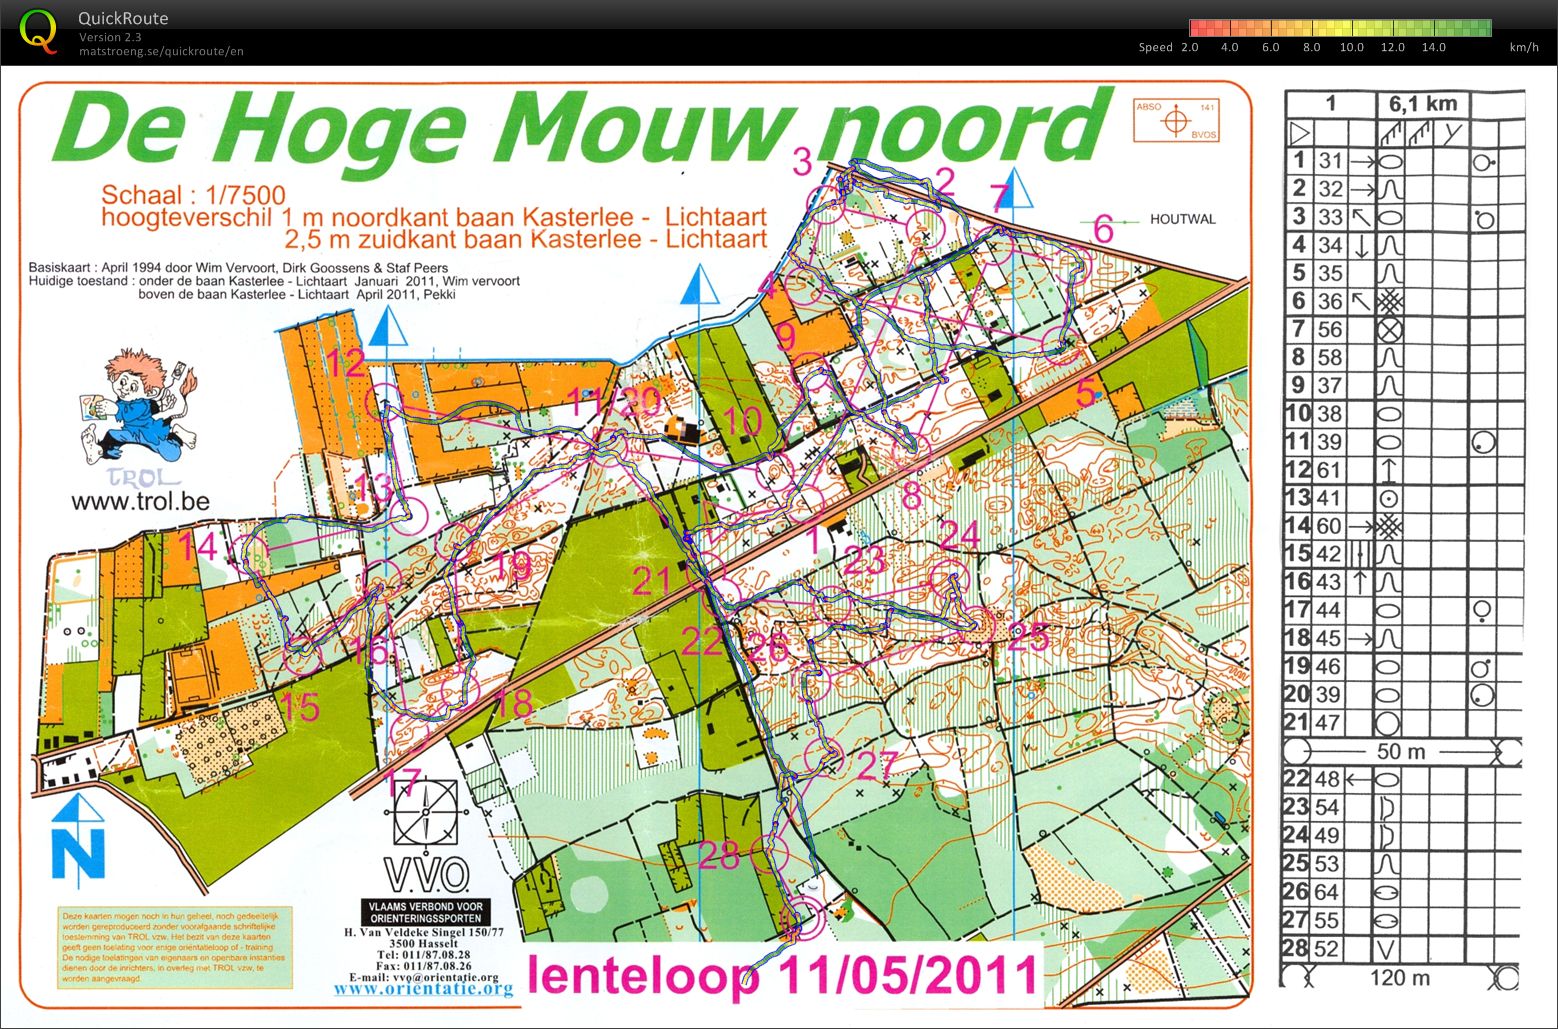 Lenteloop Hoge Mouw noord (2011-05-11)